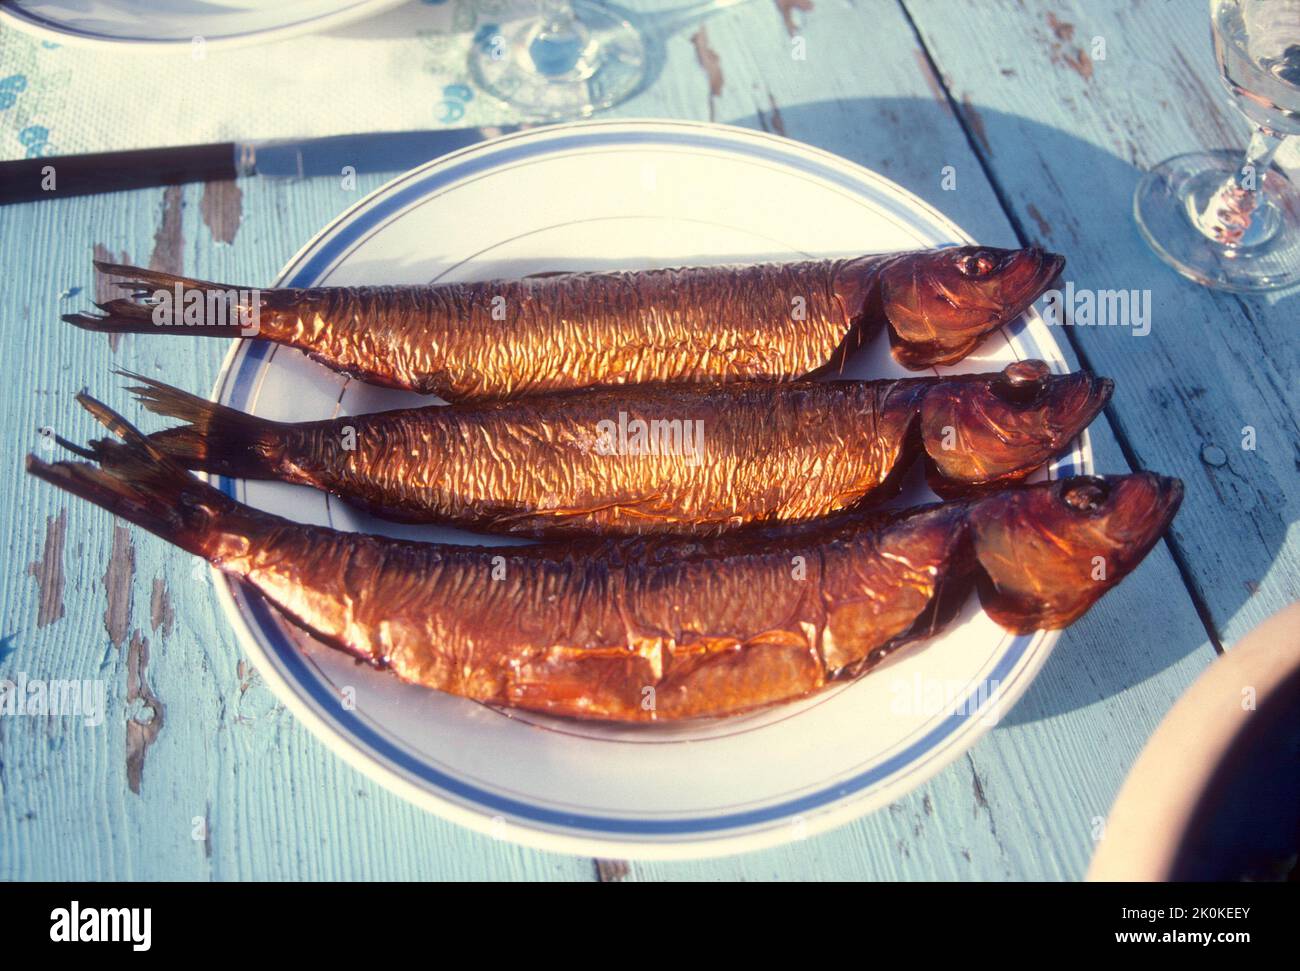 DANEMARK Bornholm poisson fumé directement de la fumée aux lunch plats des touristes Banque D'Images